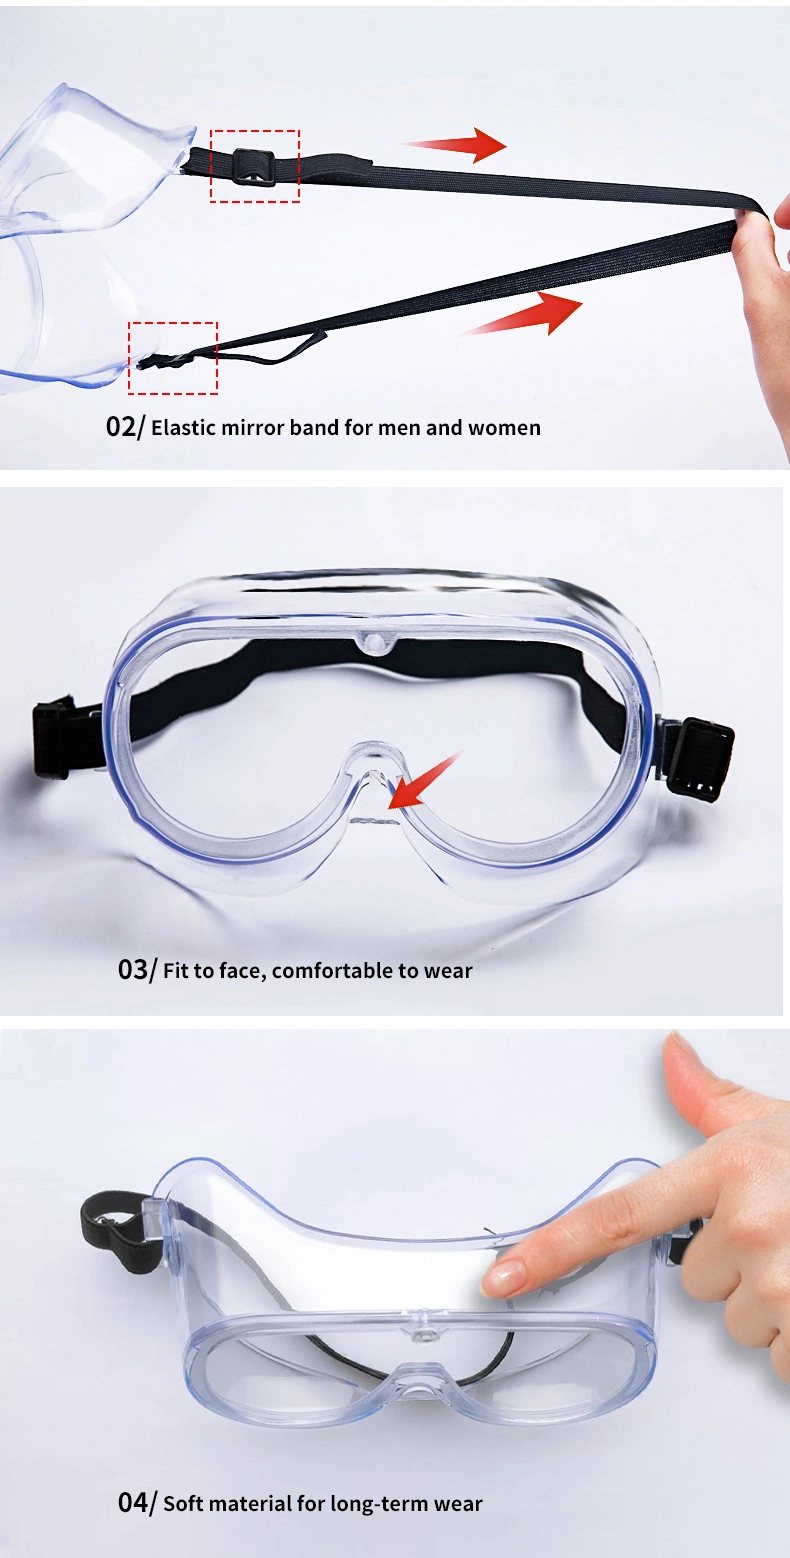 Ce FDA Anti Fog Eye Protective Eyewear PPE Medical Equipment Isolation Safety Glasses Goggles